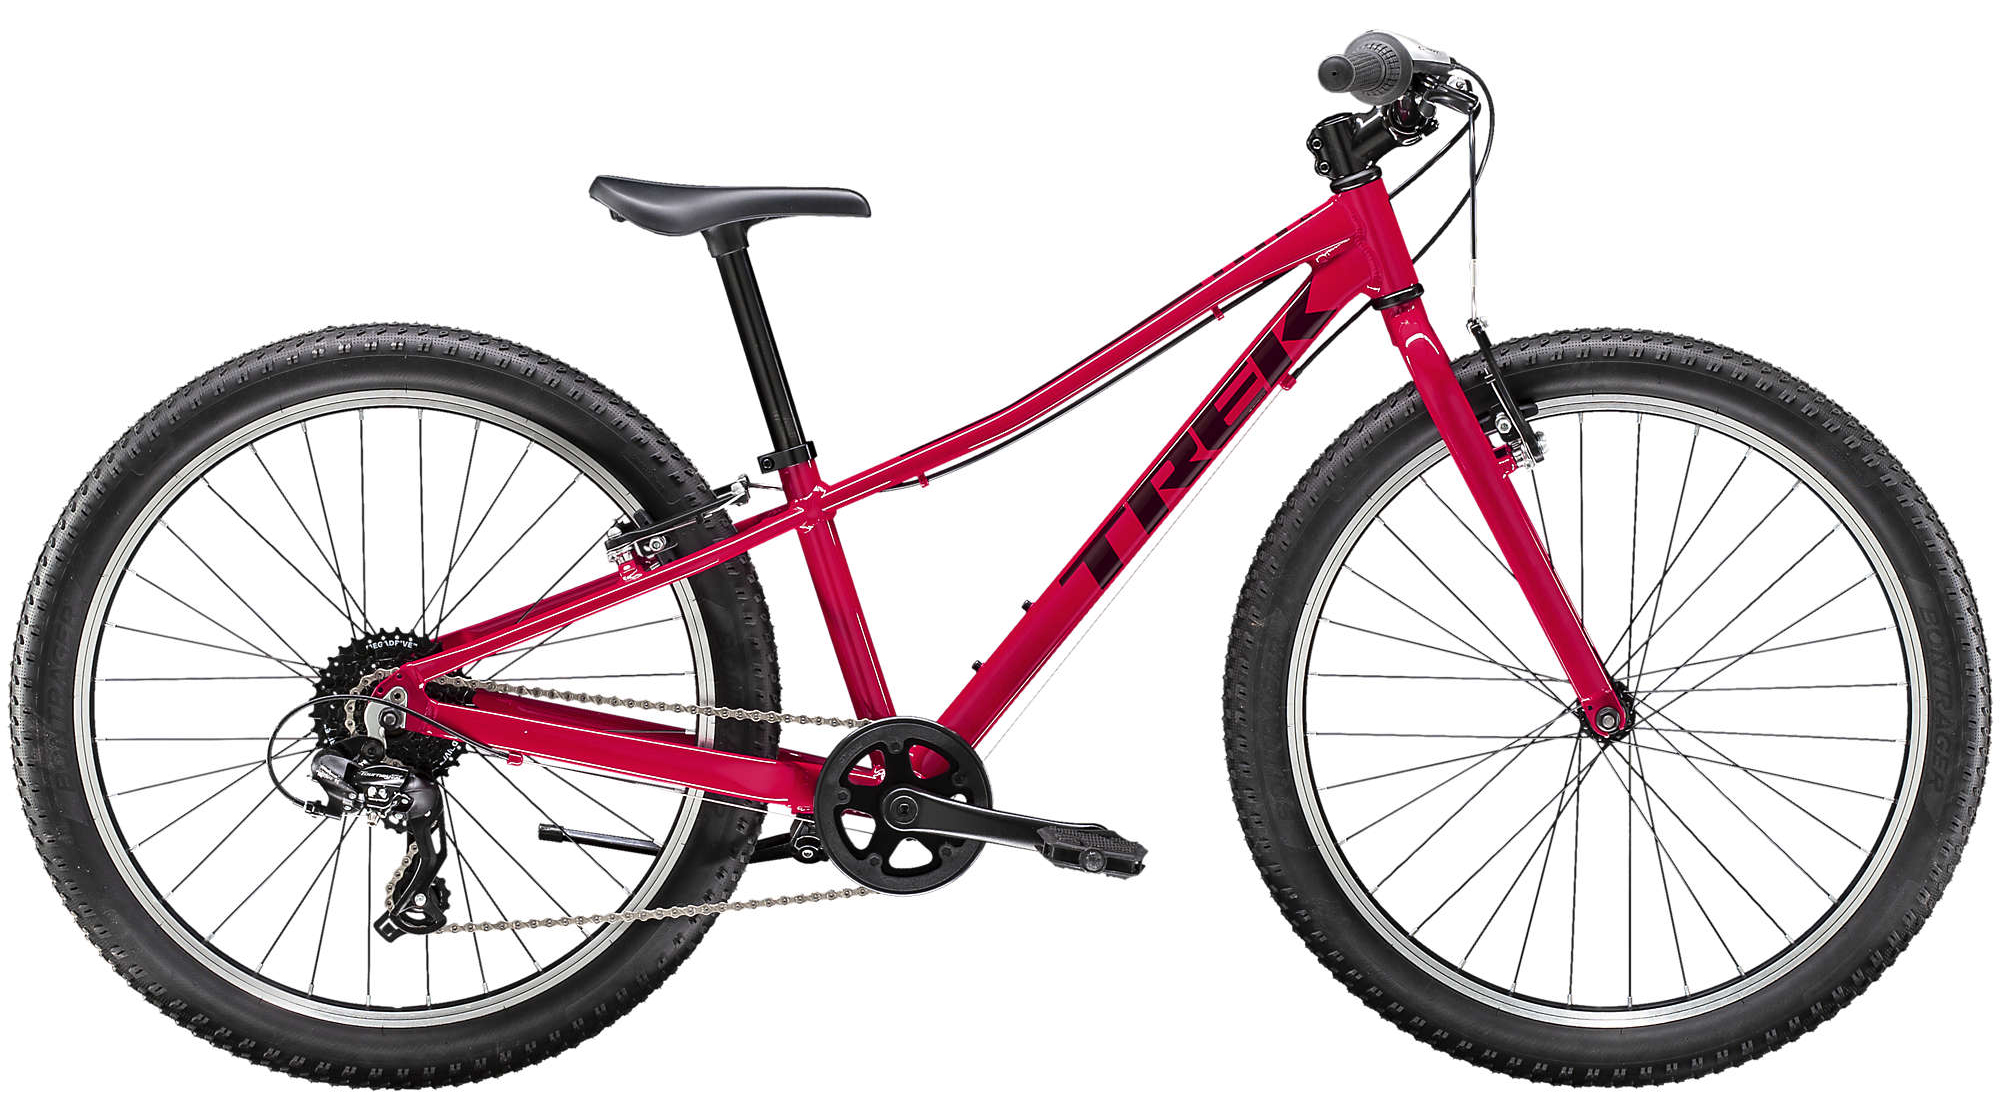  Отзывы о Детском велосипеде Trek Precaliber 24 8Sp Girls 2020